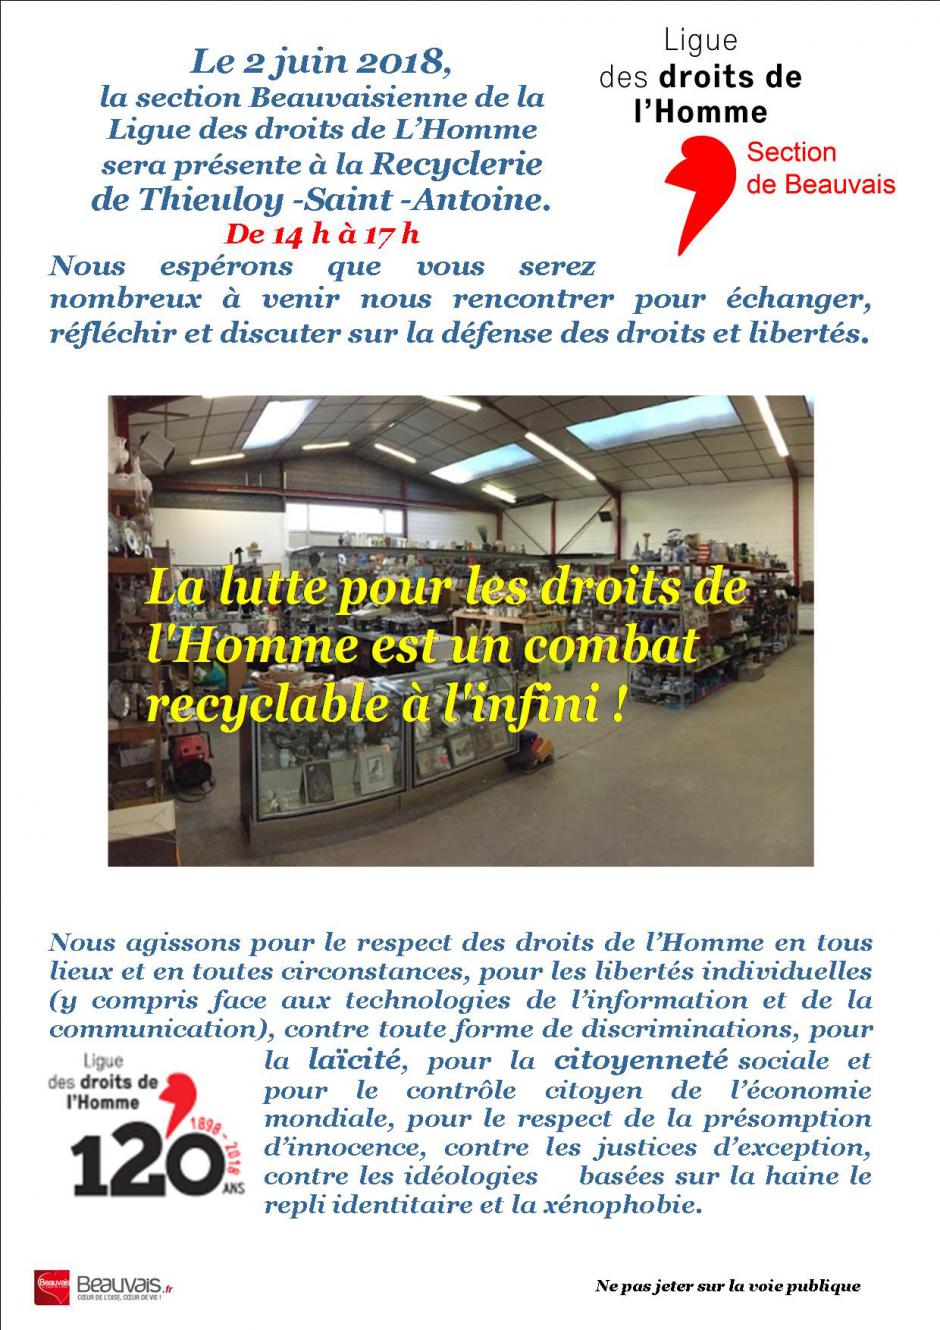 2 juin, Thieuloy-Saint-Antoine - LDH Beauvais-Échanges sur la défense des droits et libertés